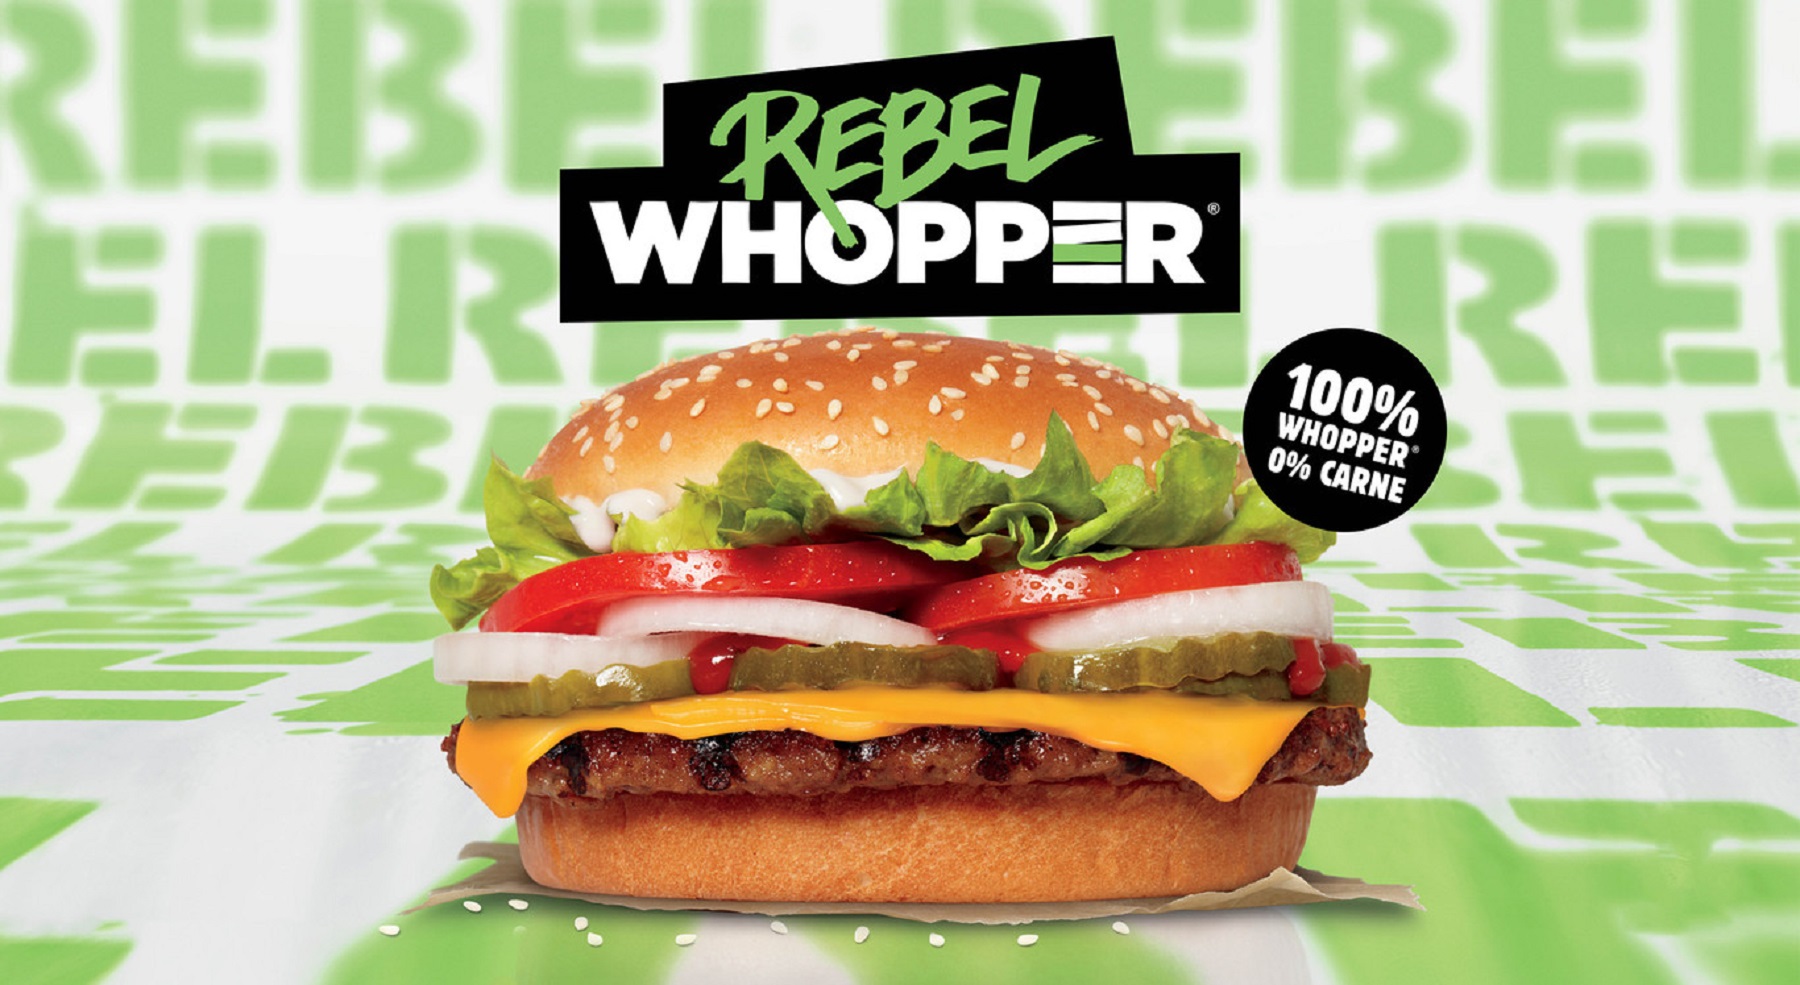 Rebel Whopper, la hamburguesa de carne vegetal de Burger King